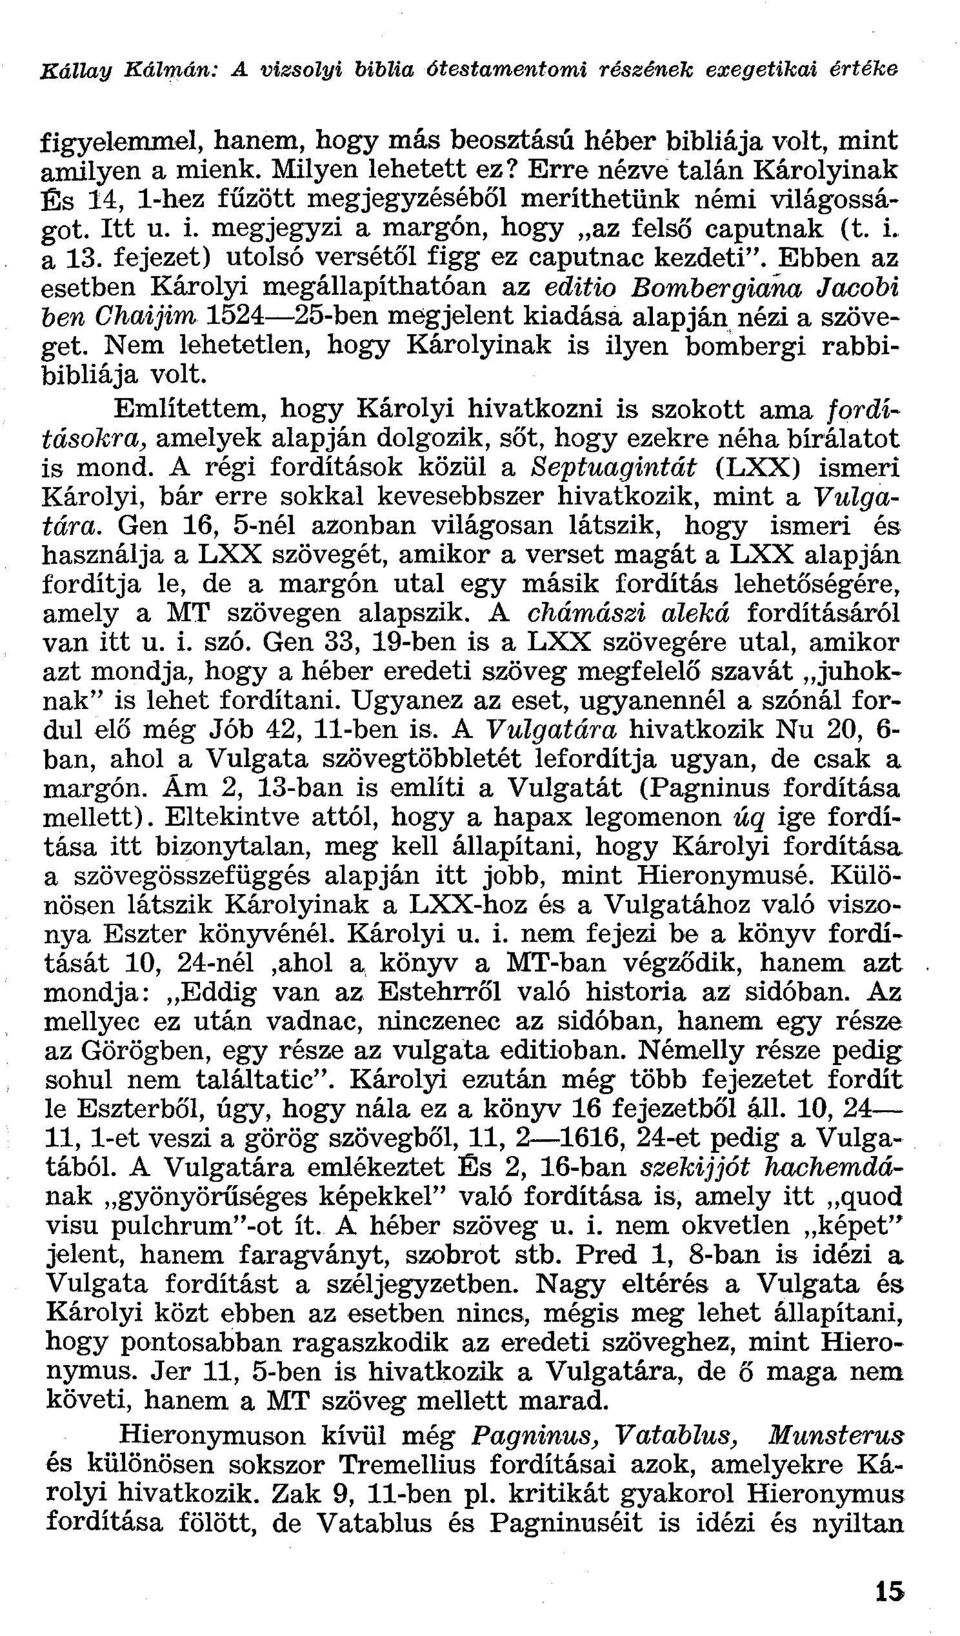 fejezet) utolsó versétől figg ez caputnac kezdeti". Ebben az esetben Károlyi megállapíthatóan az editio Bombergiana Jacobi ben Ghaijim 1524 25-ben megjelent kiadása alapján nézi a szöveget.